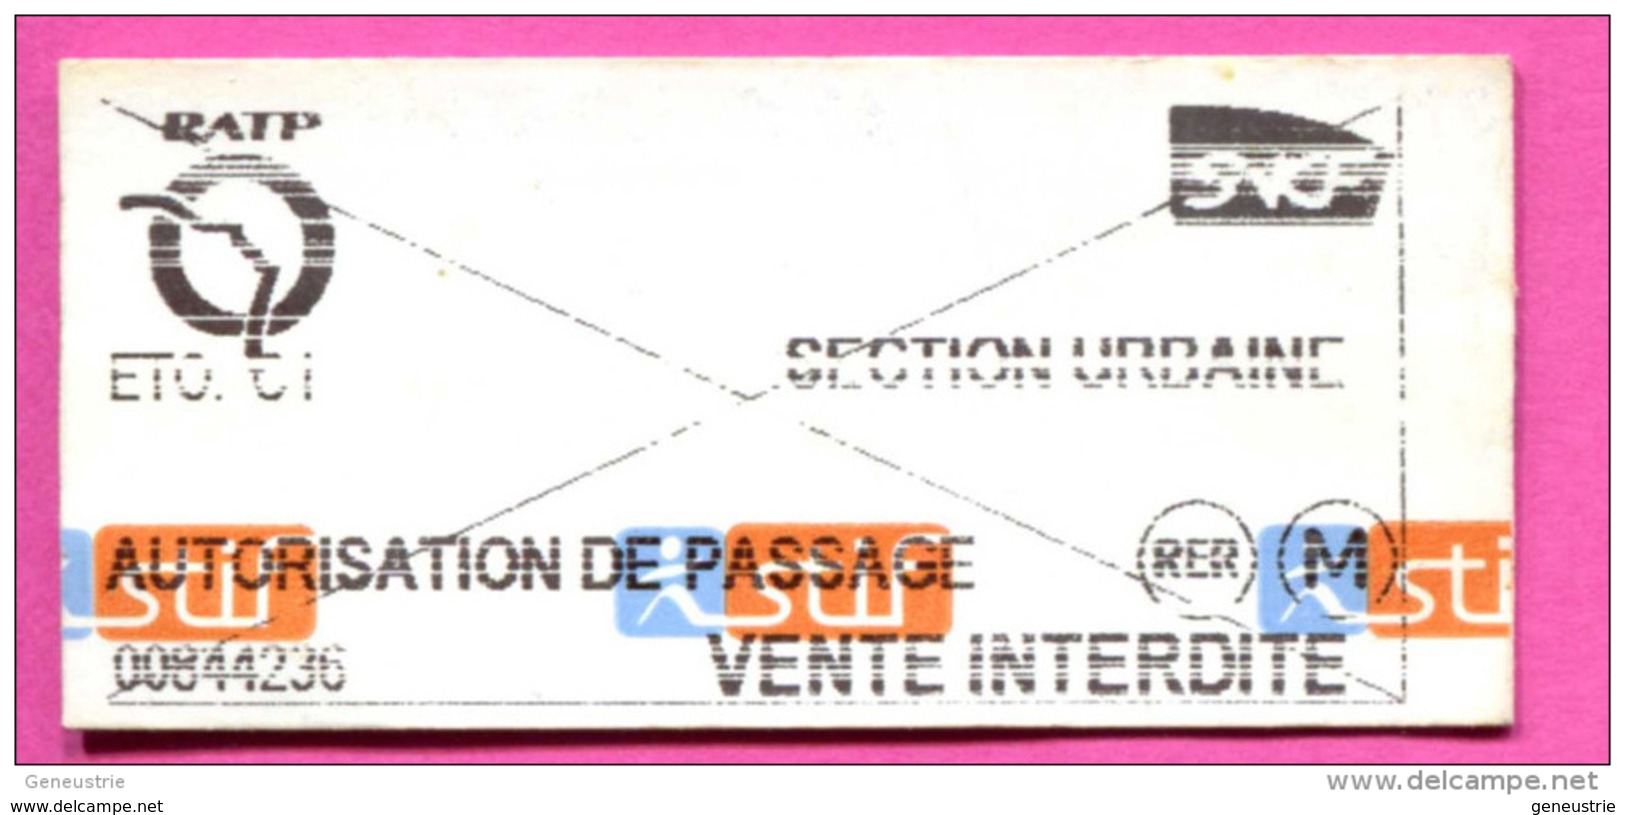 Ticket De Train / Métro - RATP / SNCF (Autorisation De Passage) Paris Train Ticket Transportation - Europe